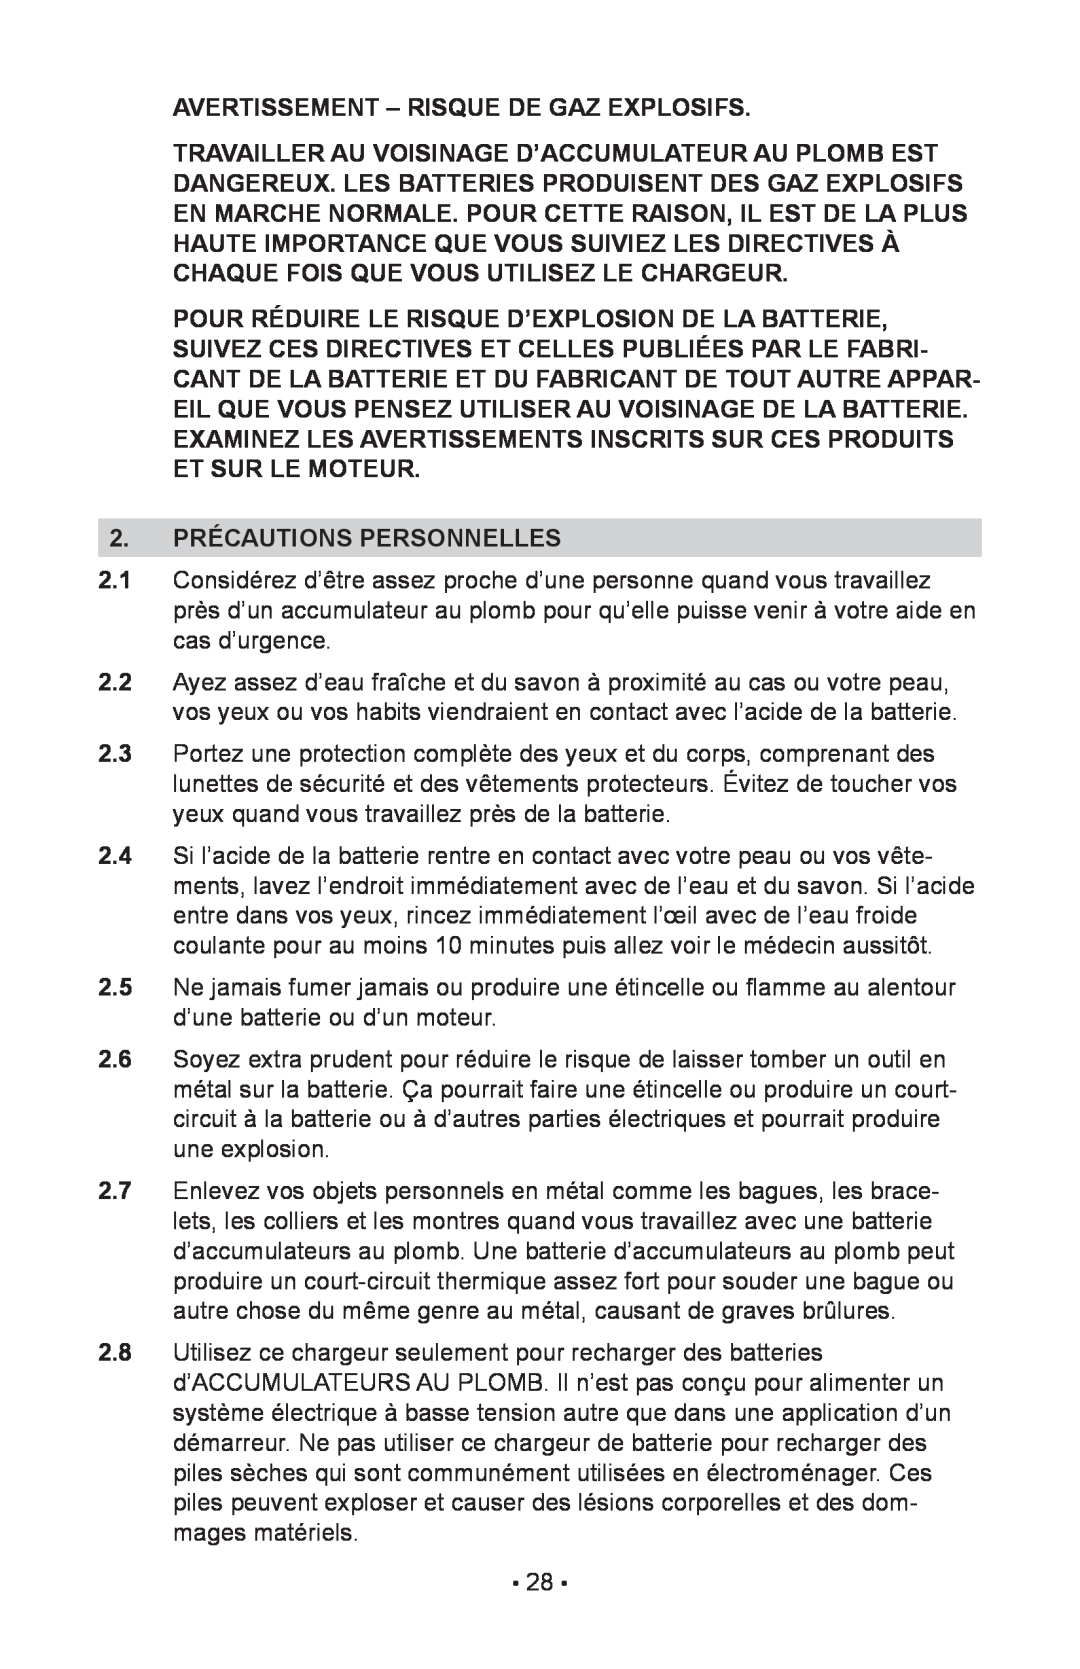 Schumacher 00-99-000943, NIN-812A, 94085894 owner manual Avertissement - Risque De Gaz Explosifs, 2. PRÉCAUTIONS PERSONNELLES 